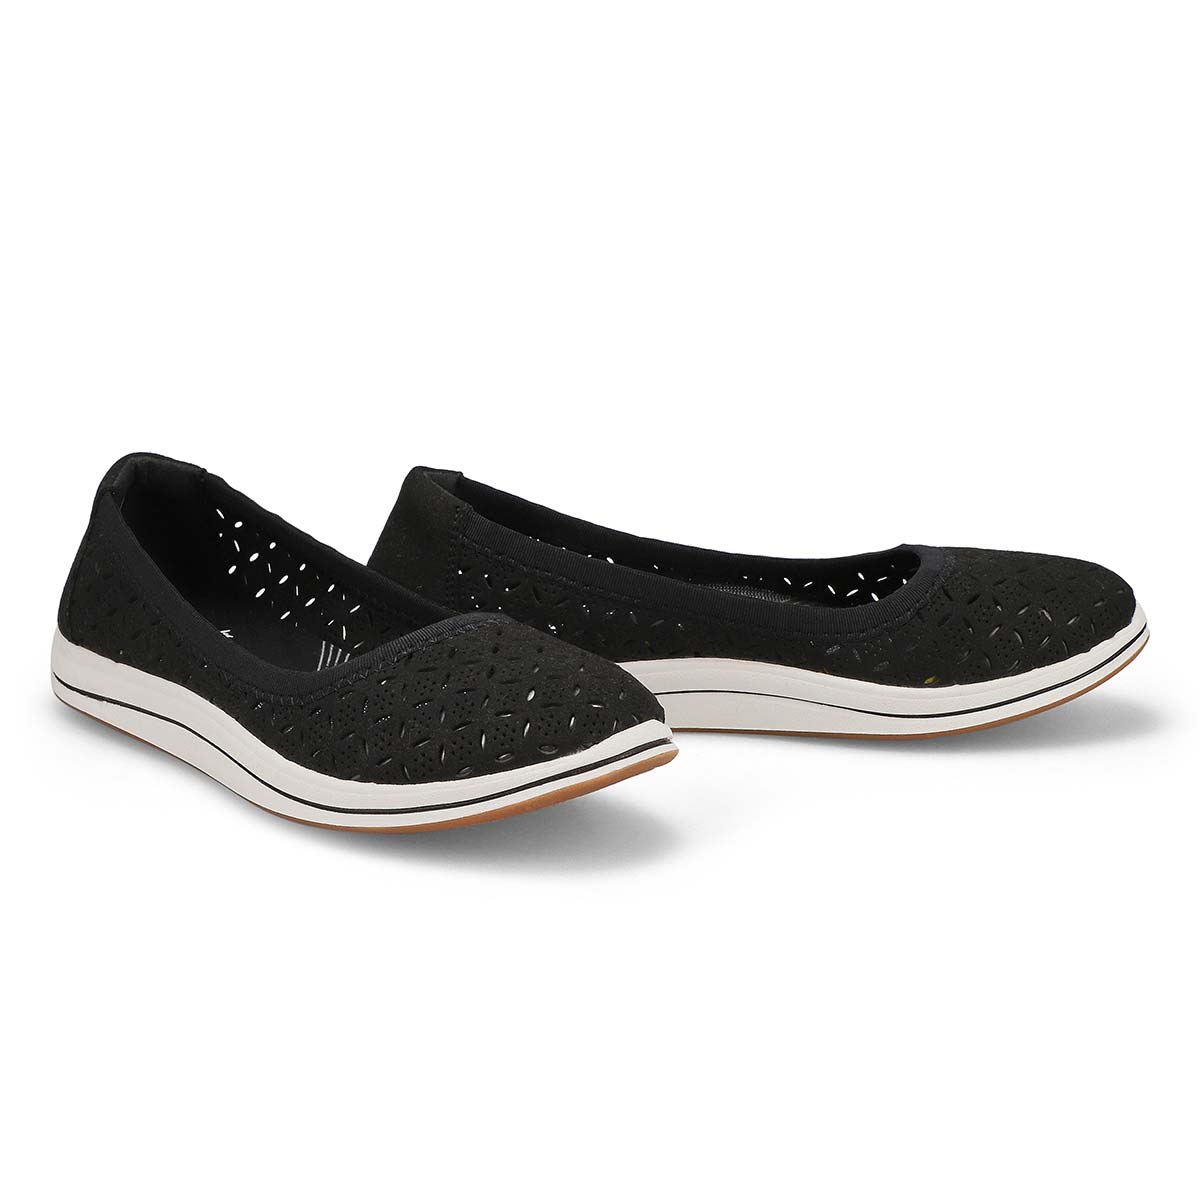 Women's Breeze Roam Casual Shoe - Black